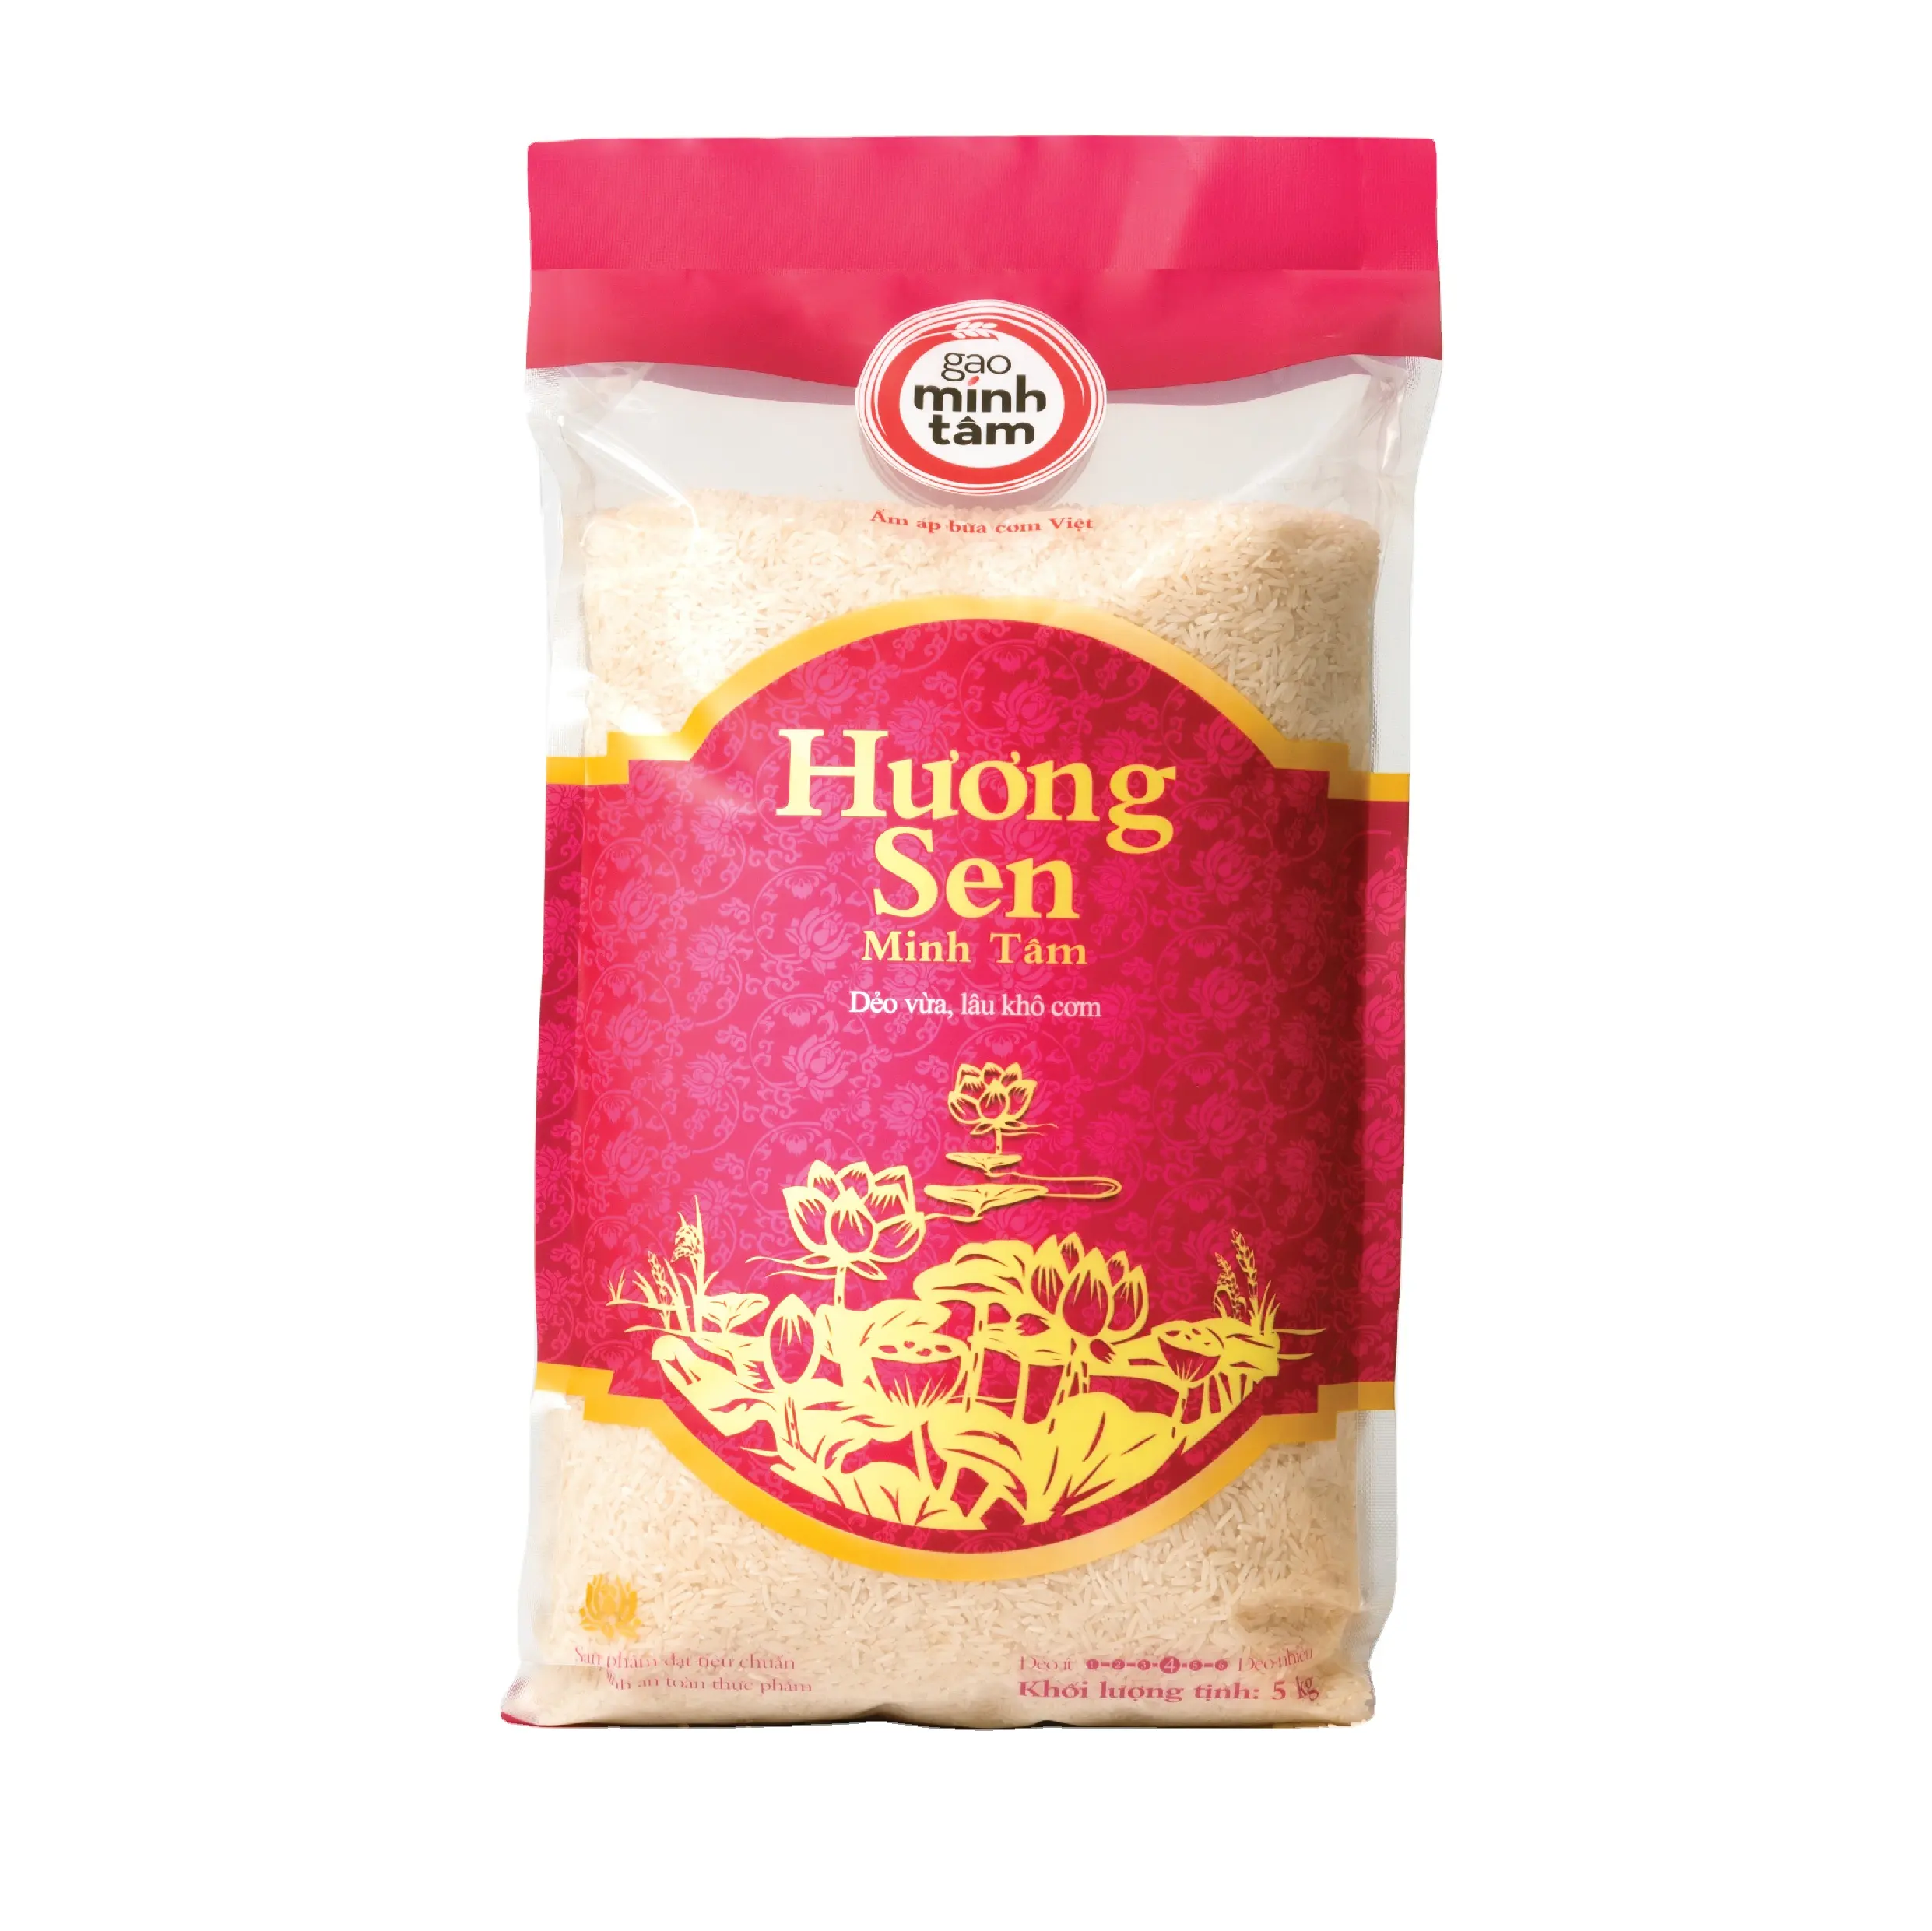 أرز Huong Sen من العلامة التجارية mih Tam من فيتنام مع لون أبيض ناعم الملمس عطري نوع متوسطة الحبوب متنوعة